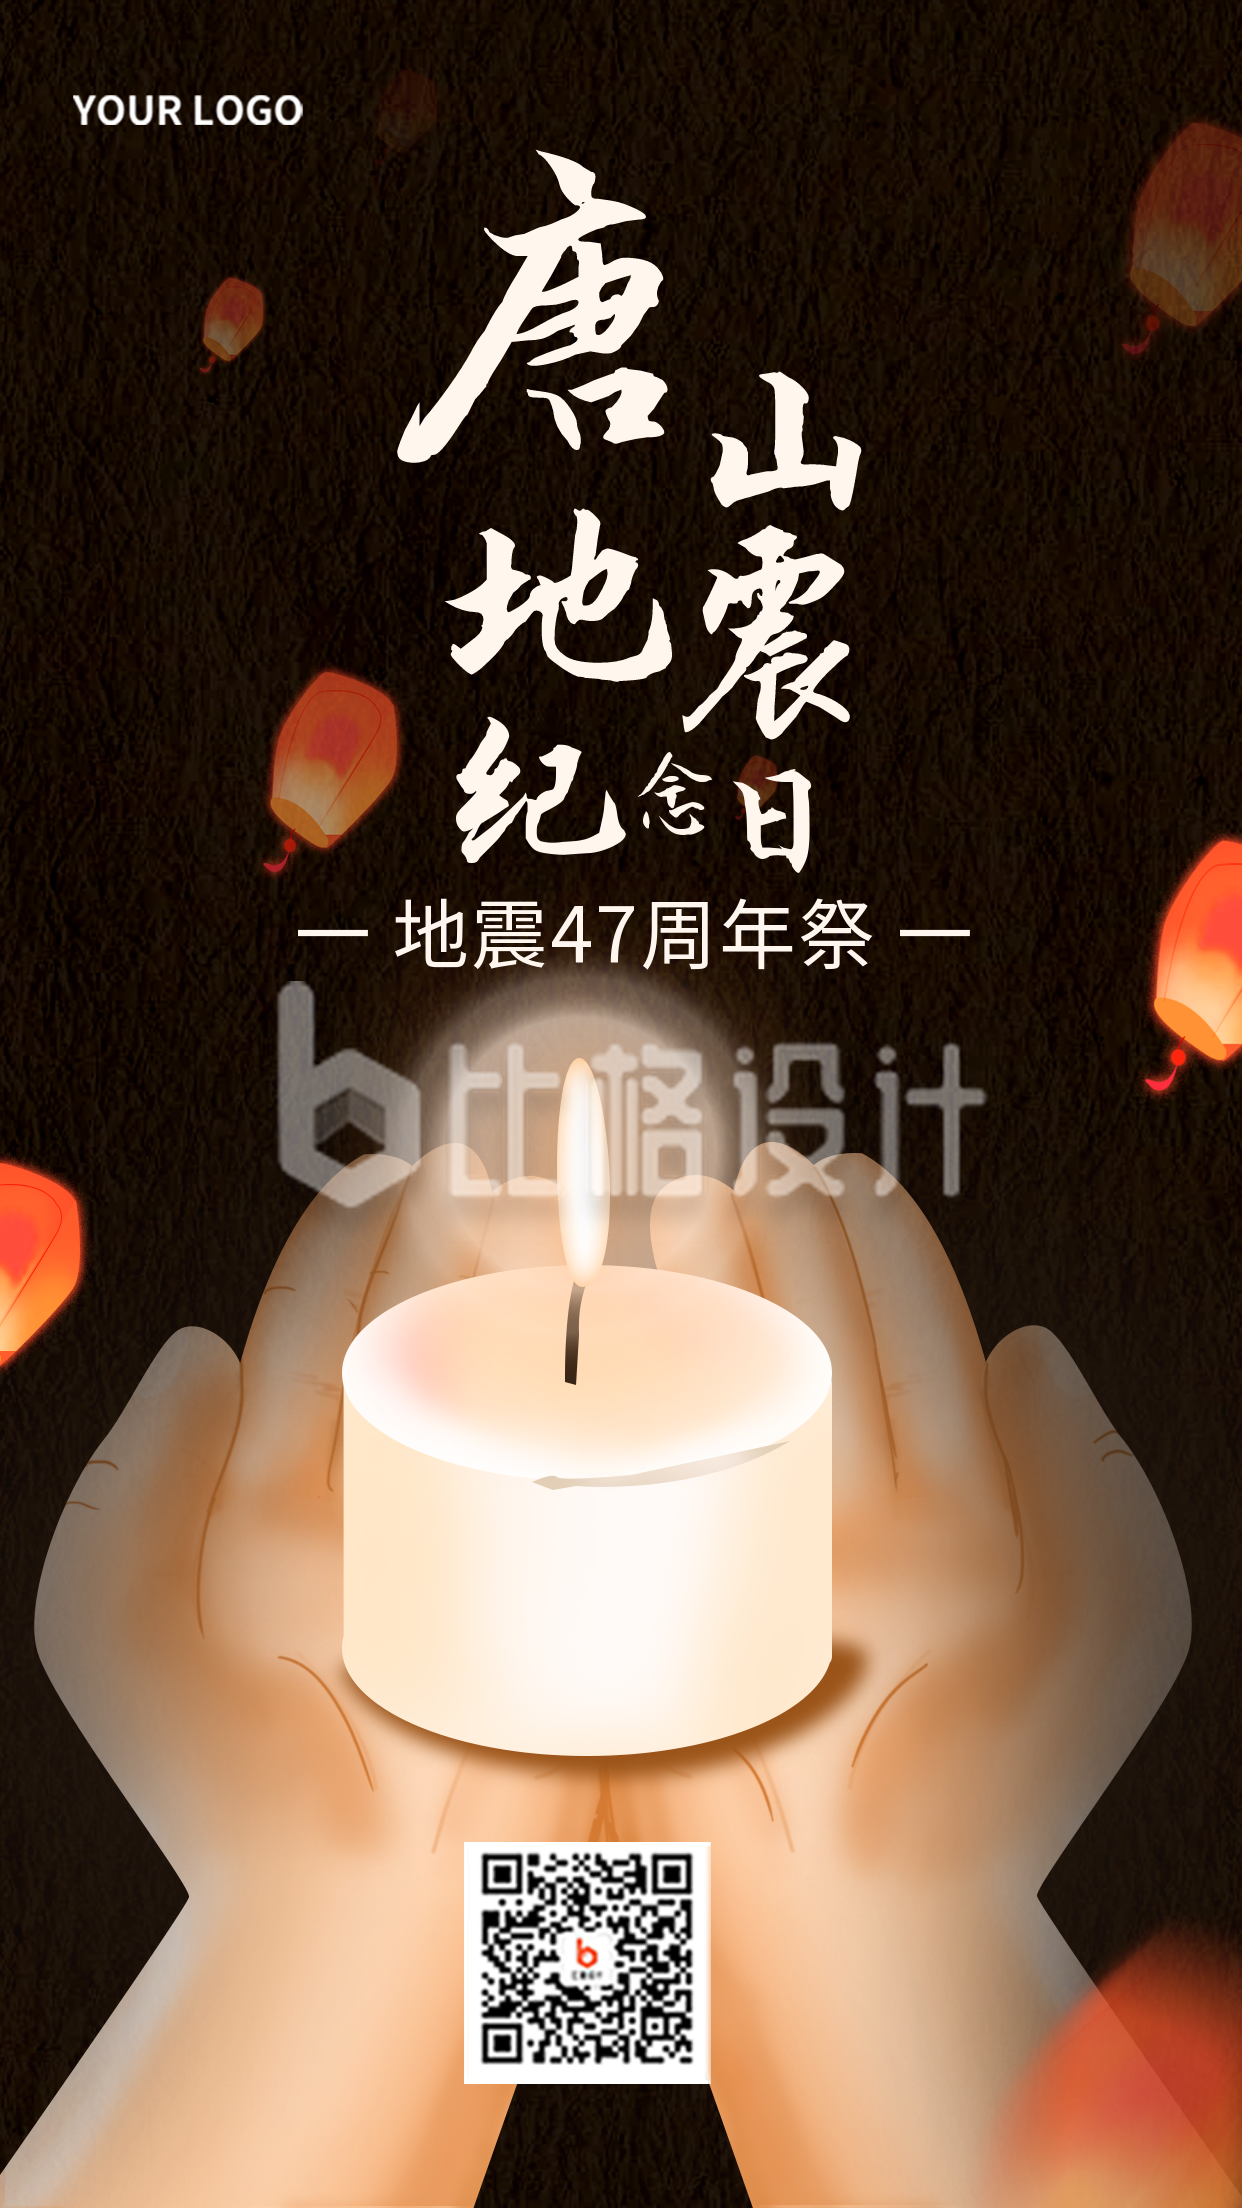 唐山地震纪念日黑色手绘宣传手机海报